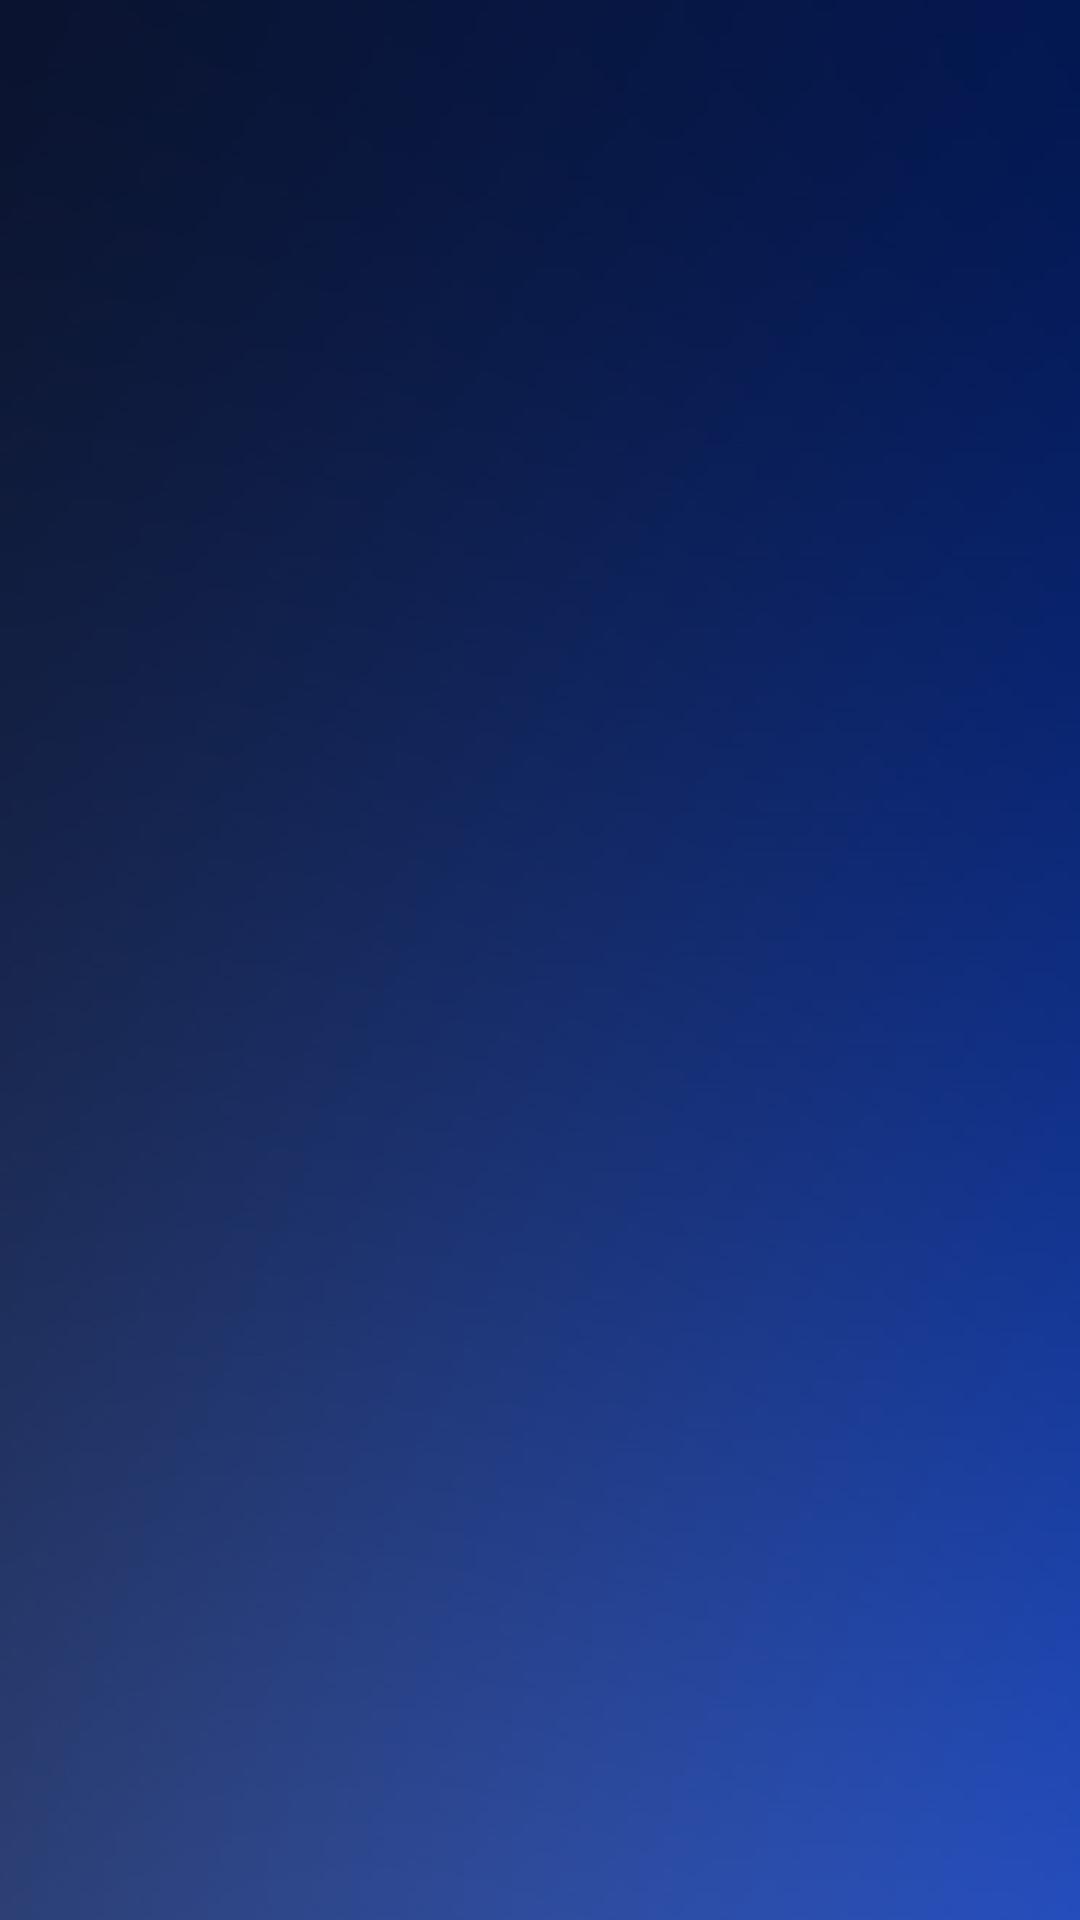 Free download Pure Dark Blue Ocean Gradation Blur Background